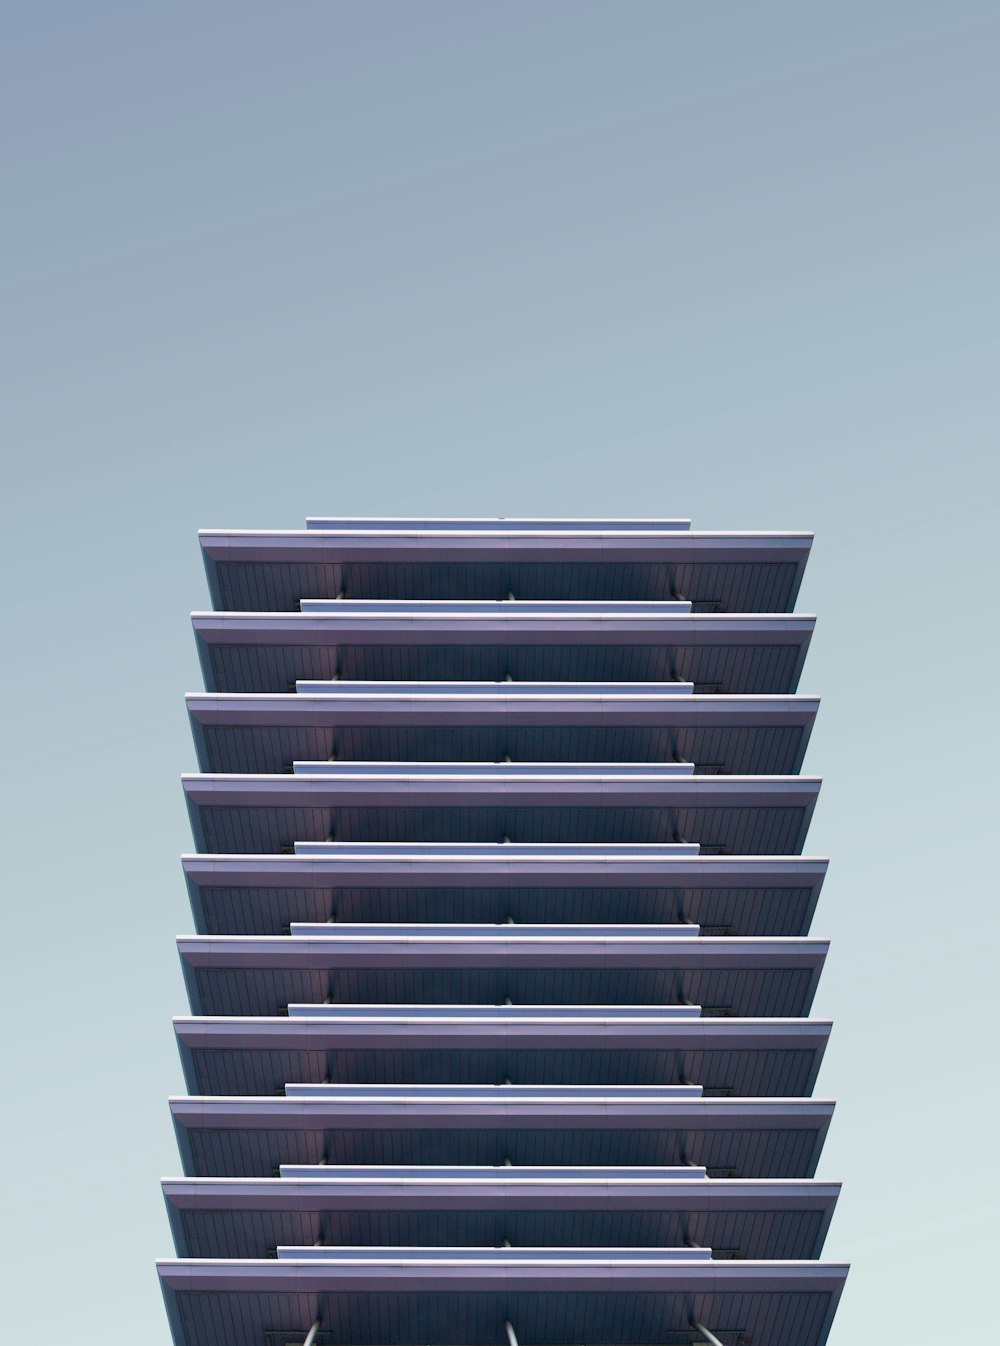 Fotografía arquitectónica de edificios de gran altura